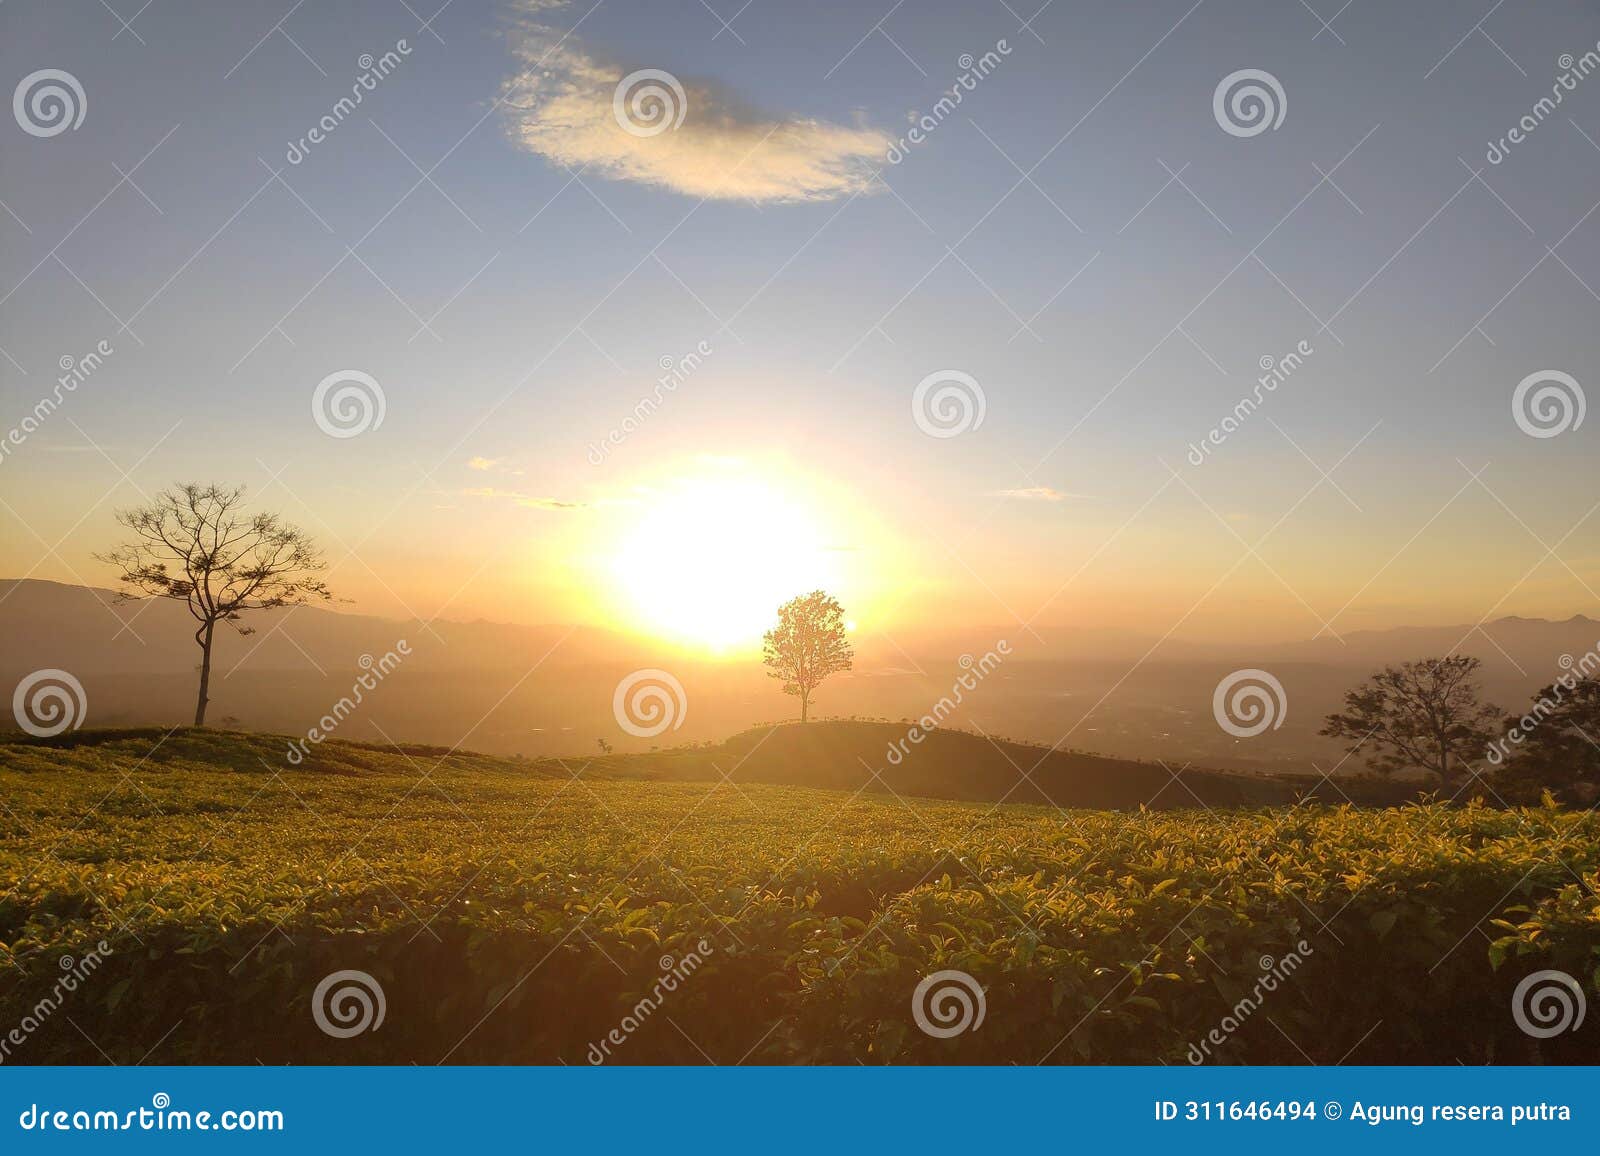 sunrise on the tea plantation at dempo mountain